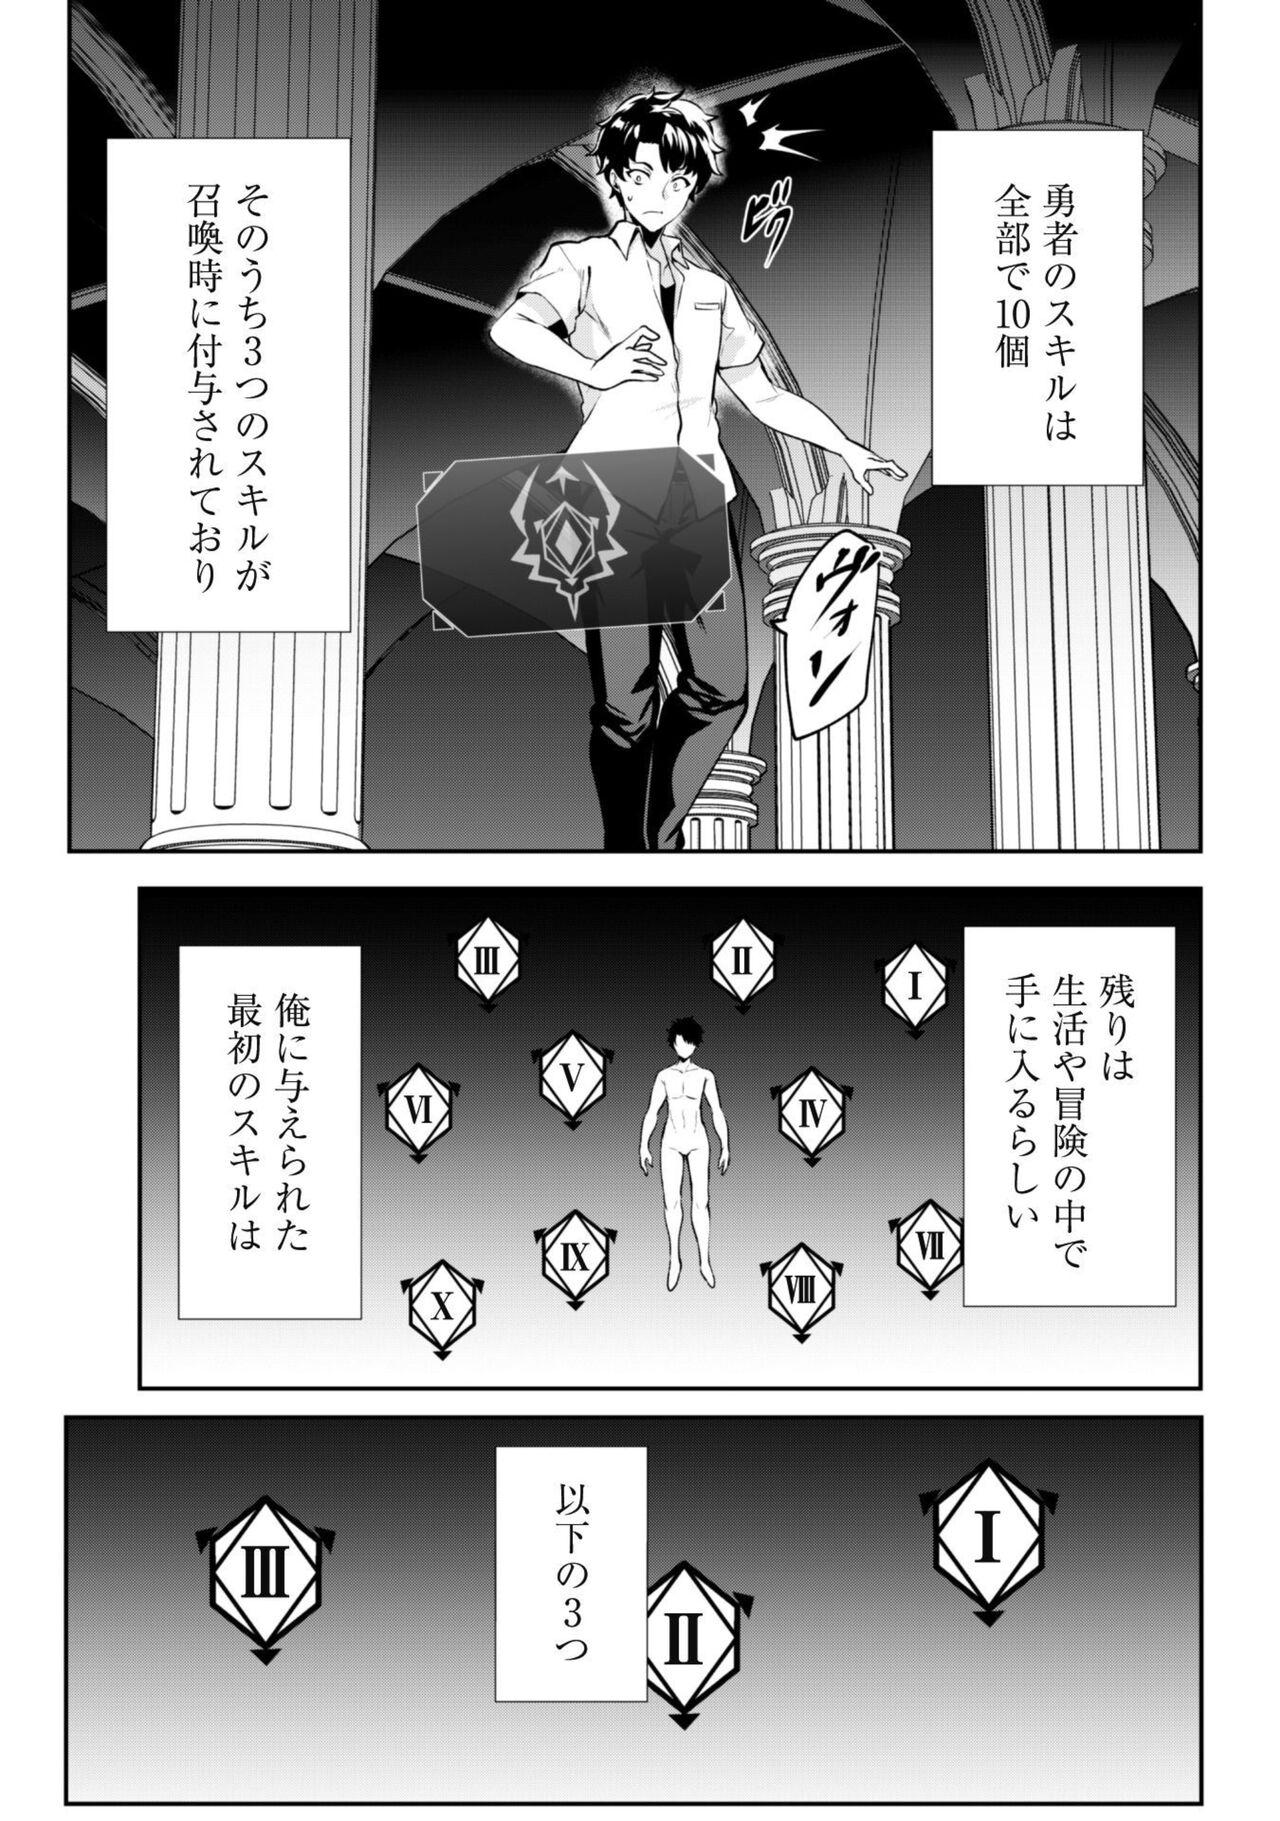 Flaca Hangyaku no Yūsha 〜 Sukiru o Tsukatte Haraguro ōjo no Kokoro to Karada o Shōaku seyo 〜 1 Madura - Page 6